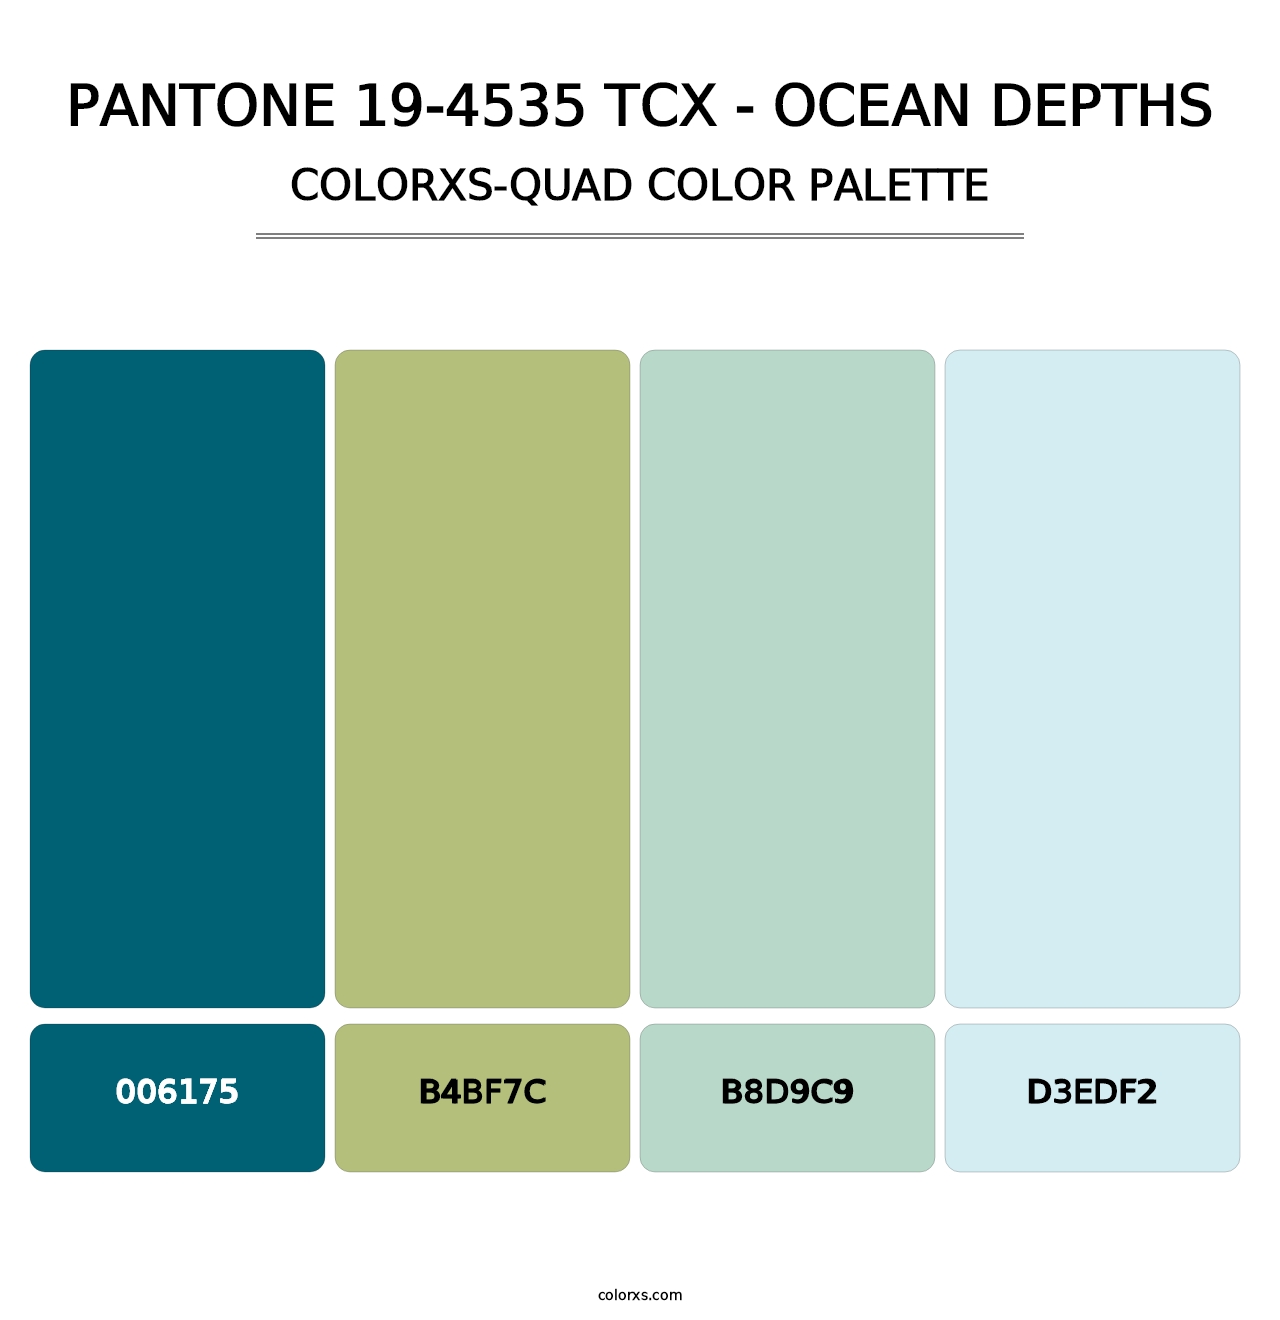 PANTONE 19-4535 TCX - Ocean Depths - Colorxs Quad Palette